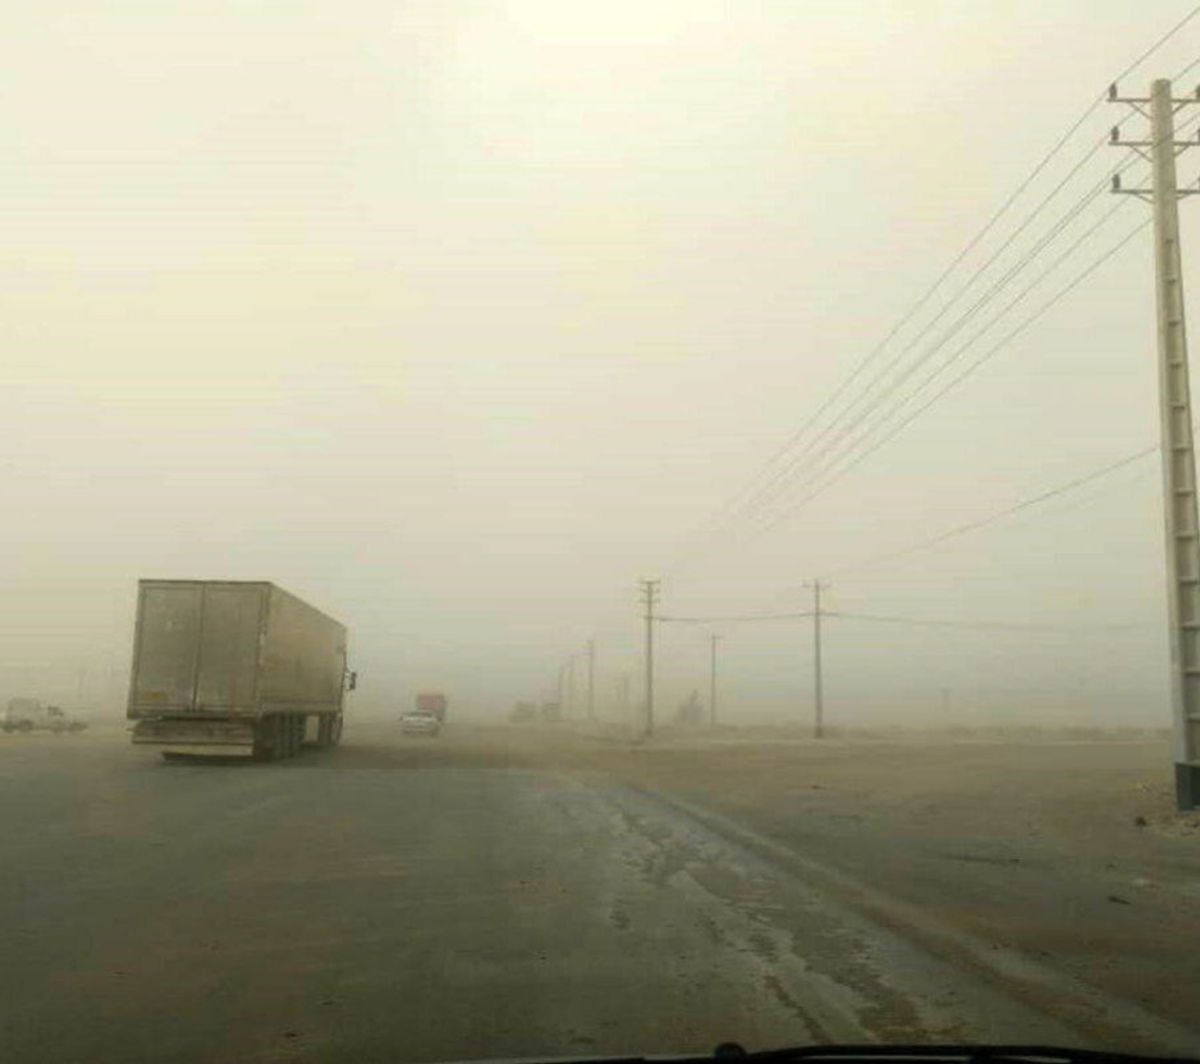 تعطیلی ادارات خوزستان در روز شنبه صحت ندارد